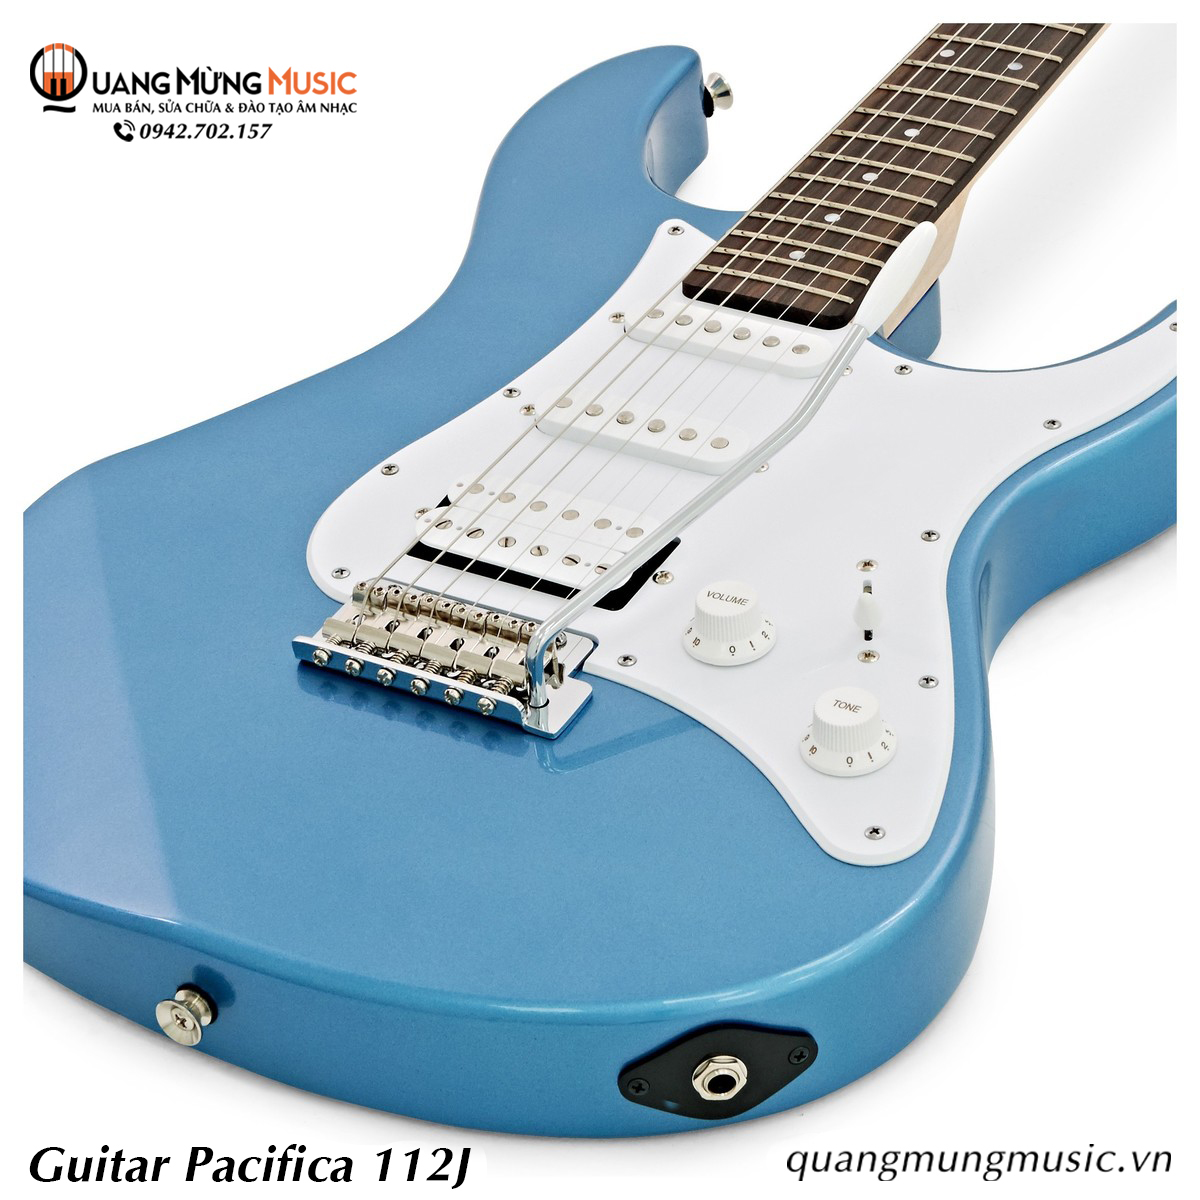 Guitar Điện Yamaha Pacifica 112J